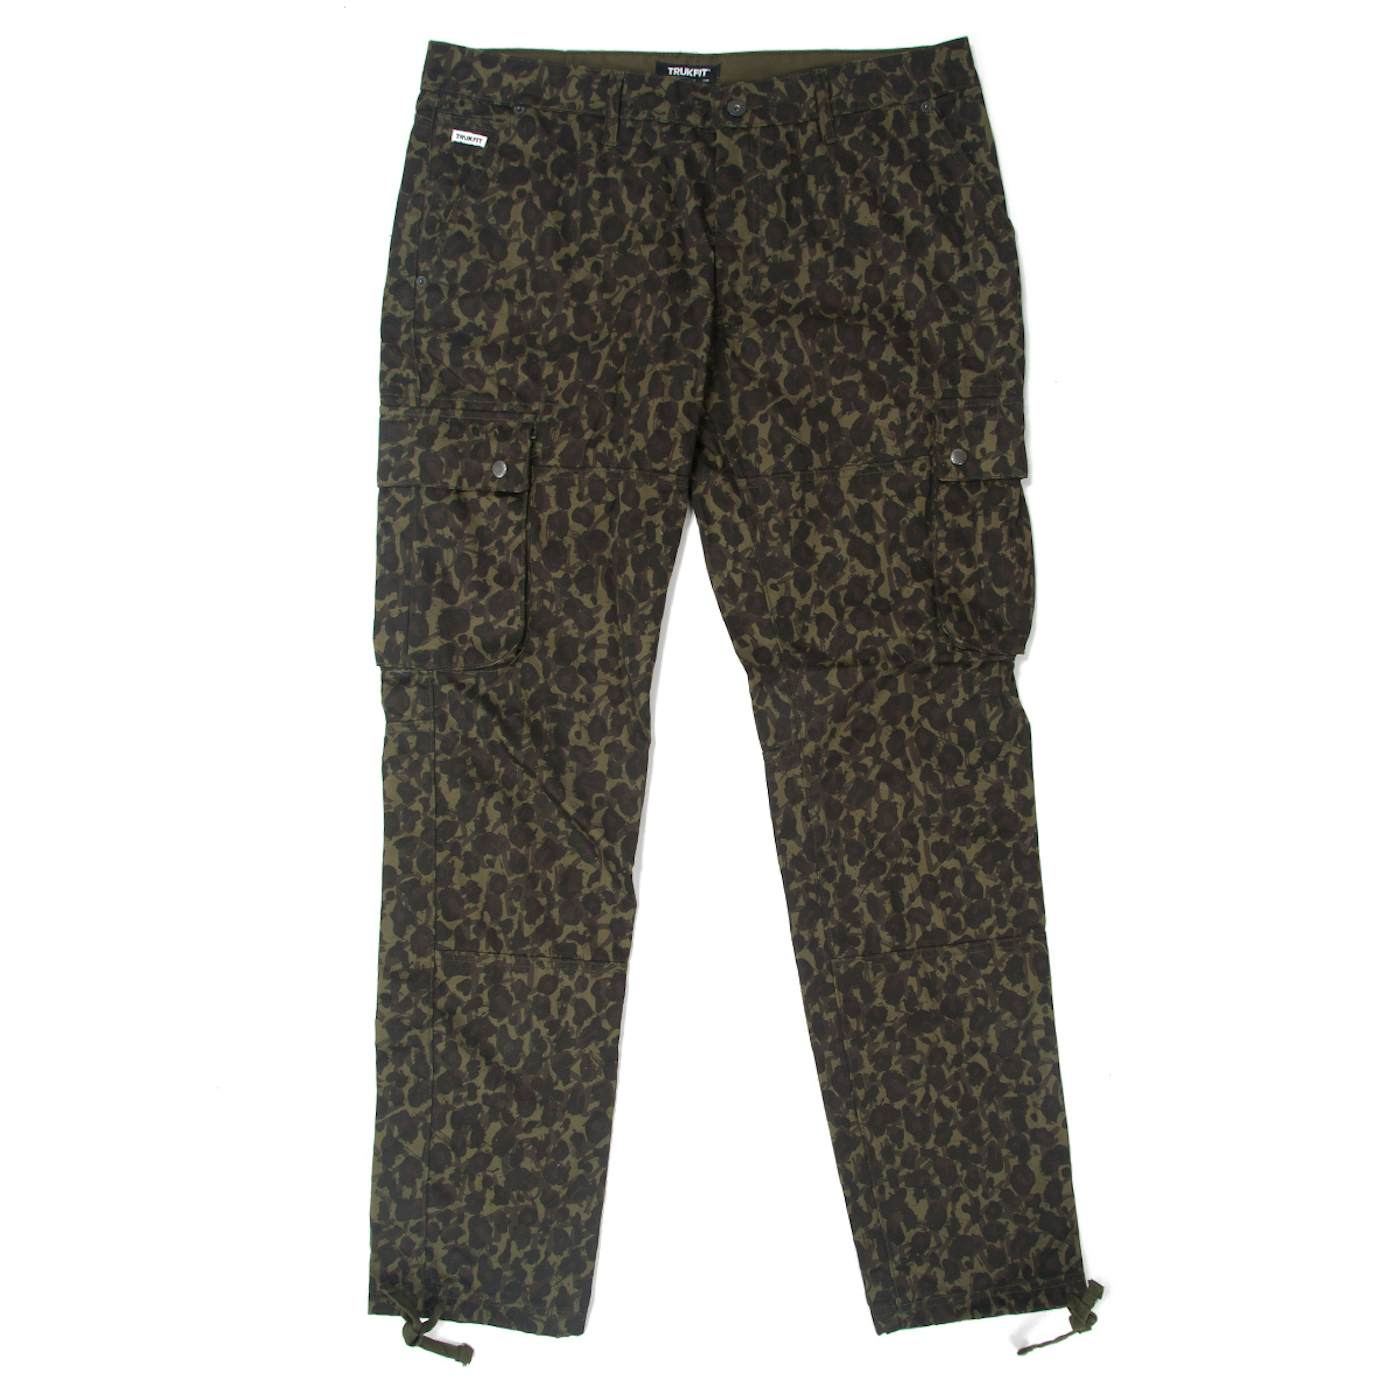 TRUKFIT Truk Cheetah Camo Cargo Pants